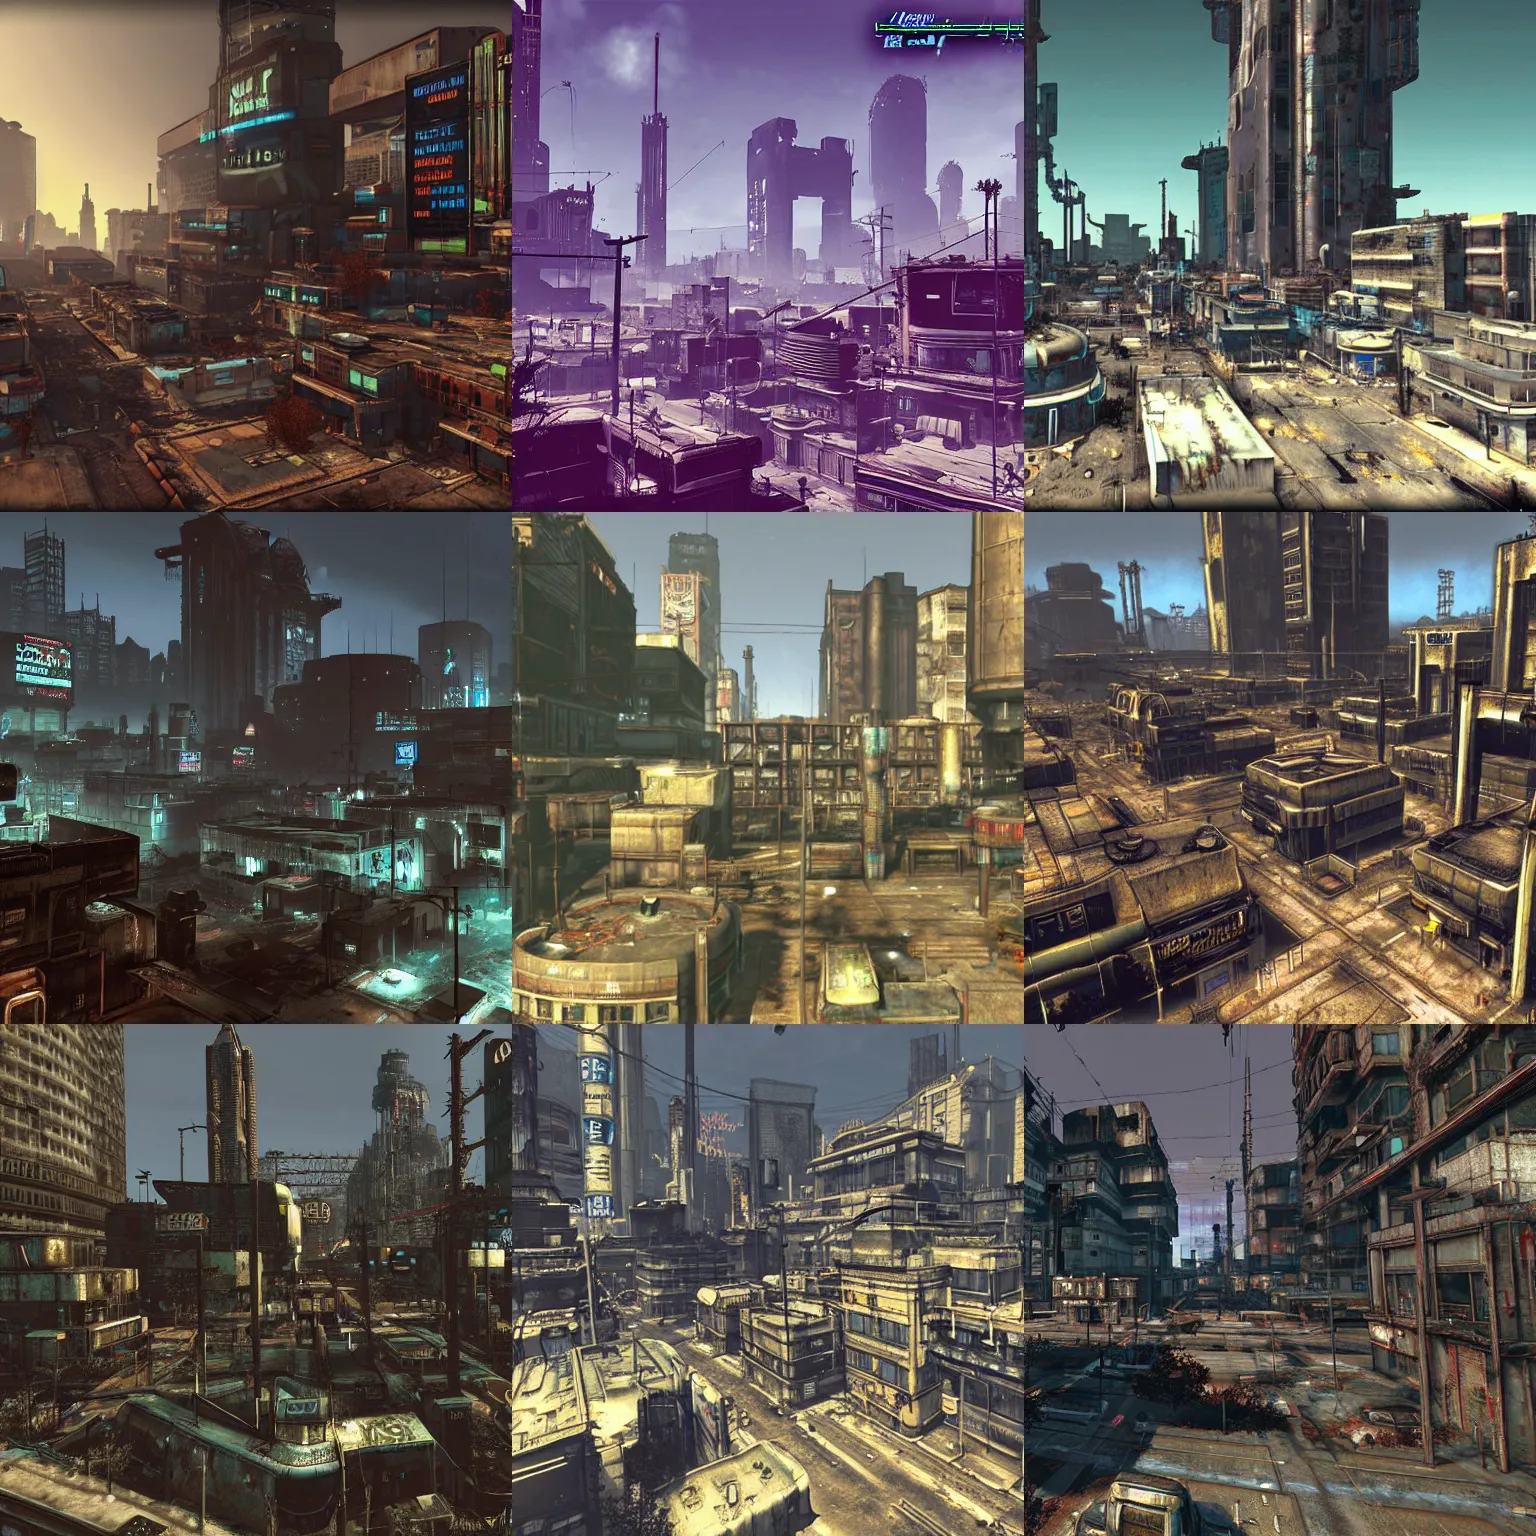 Prompt: A cyberpunk city in Fallout